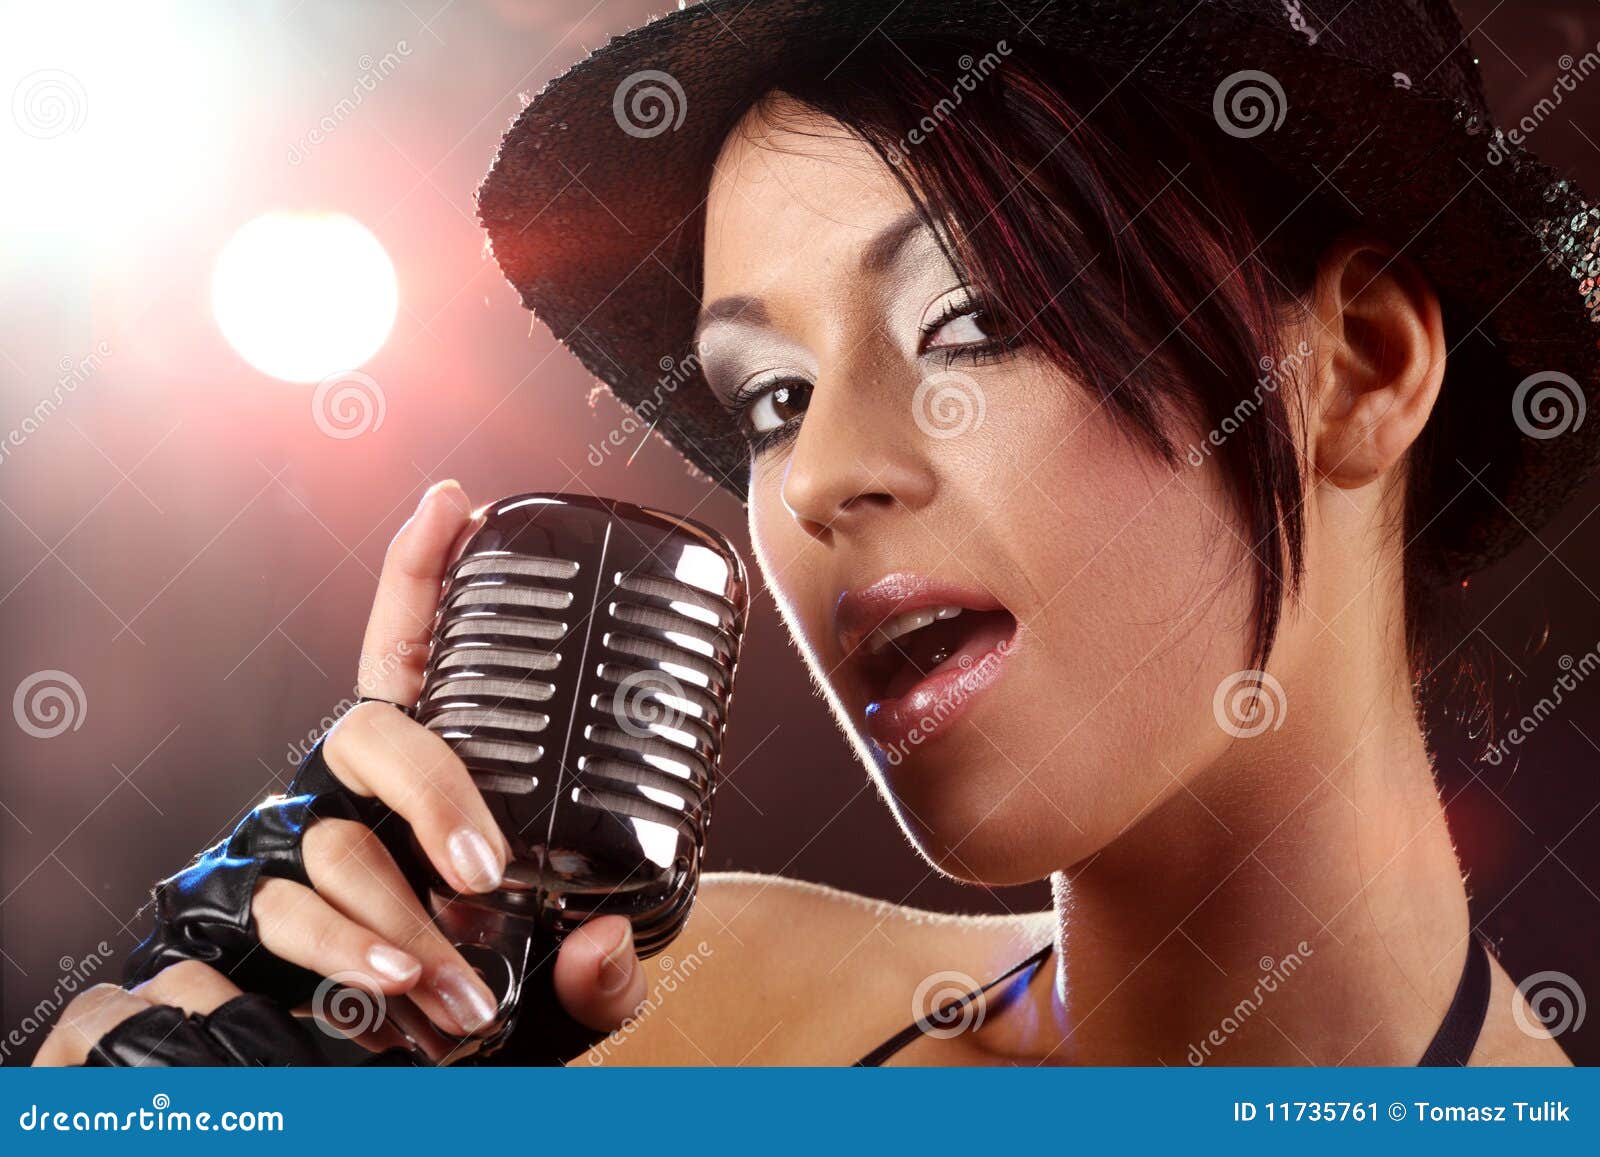 girl singer